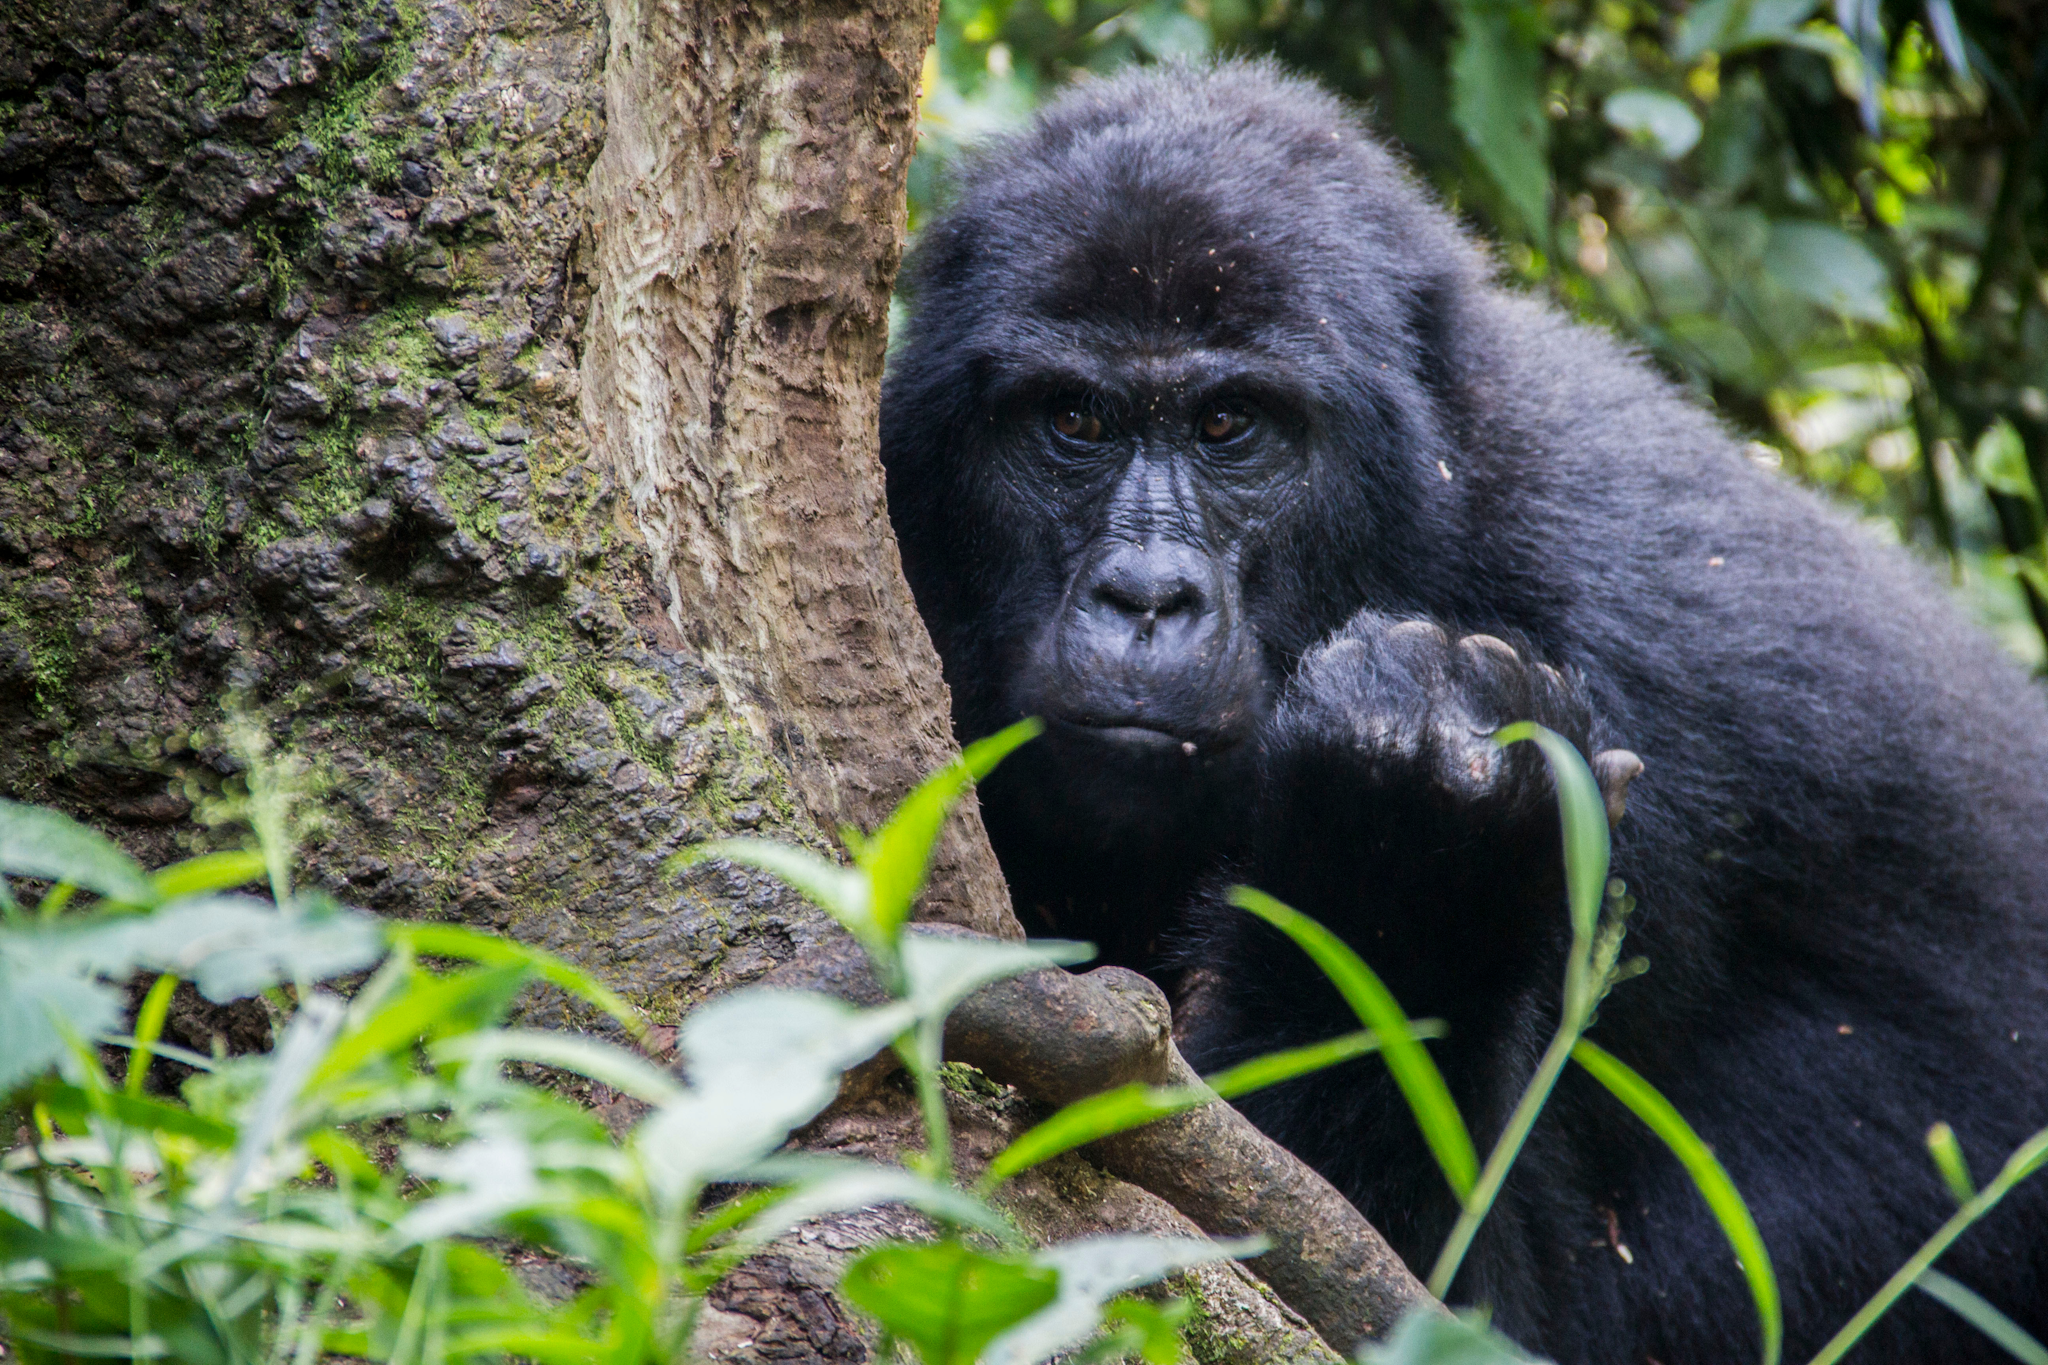 Bwindi mountain gorillas, Uganda
Canva image - https://www.canva.com/photos/MAEfpUwsERM-bwindi-impenetrable-national-park-uganda-mountain-gorilla/